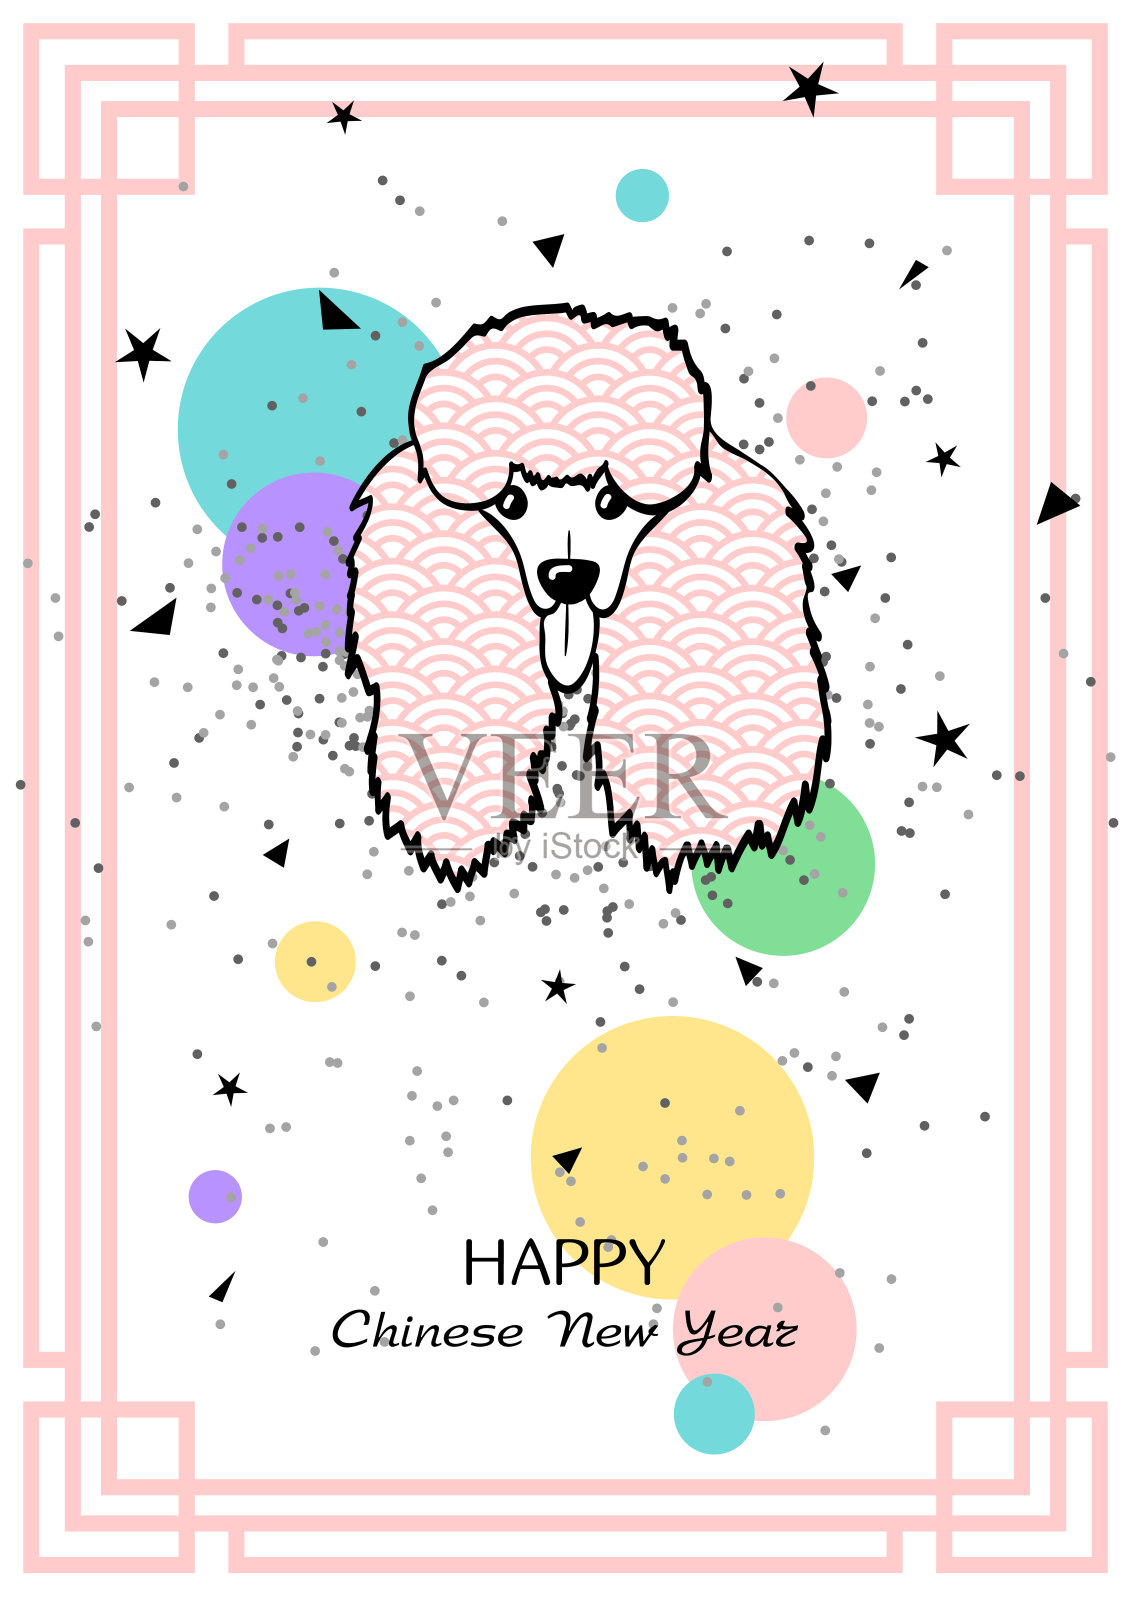 新年快乐!2018年中国新年贺卡。2018狗年。贵宾犬小狗。可爱的设计。向量的背景。狗设计模板素材